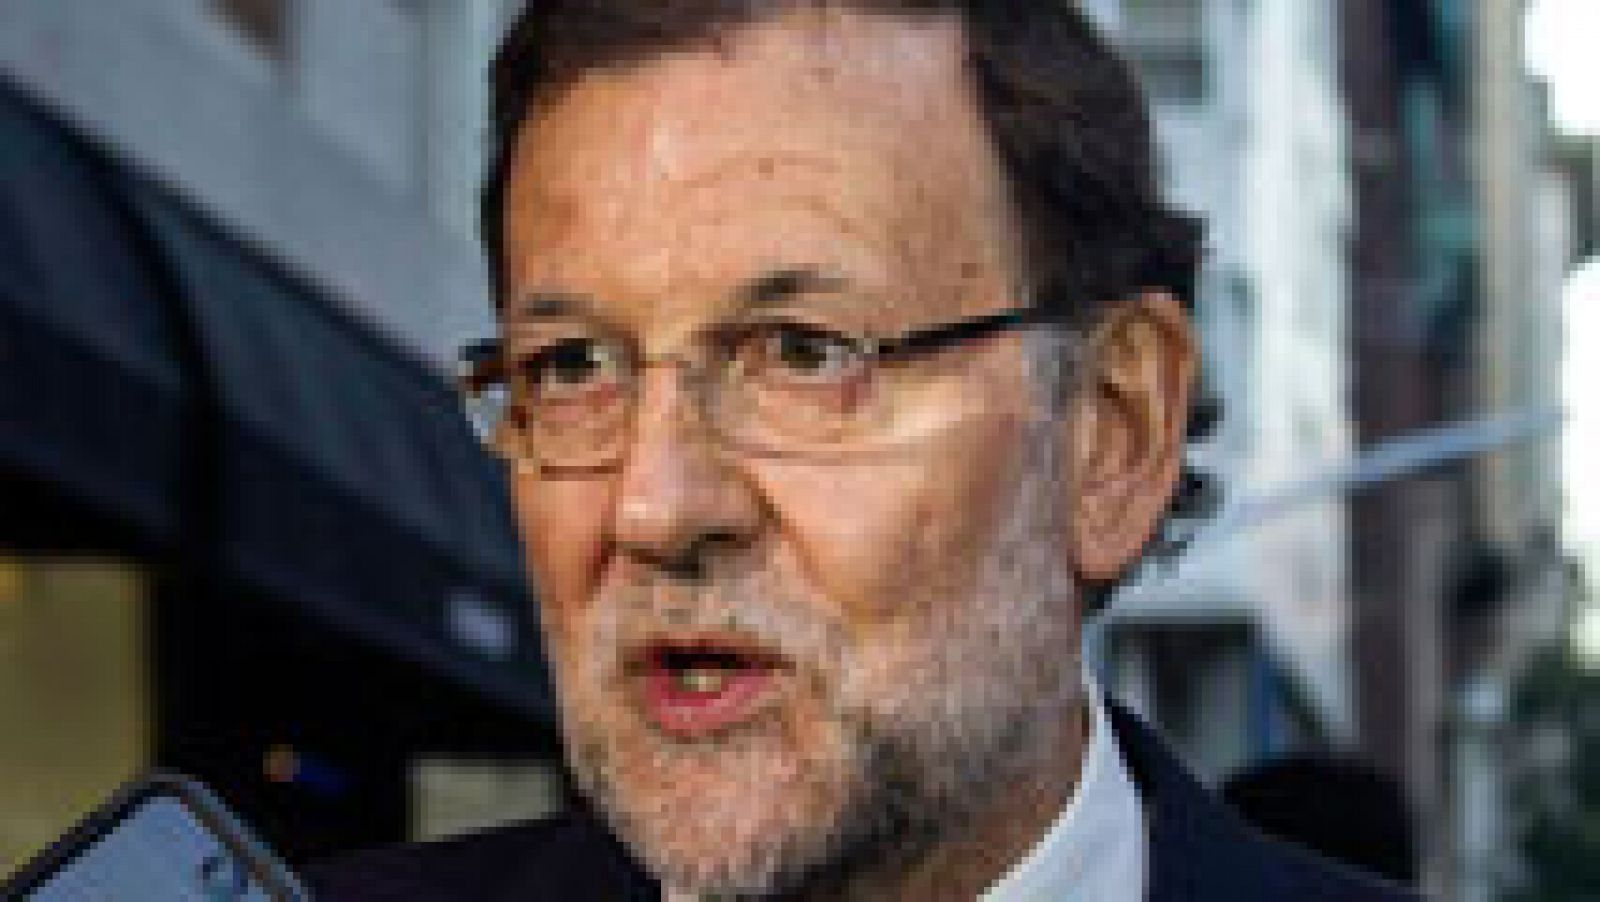 Rajoy responde a Bruselas: "España no incumplirá el déficit"